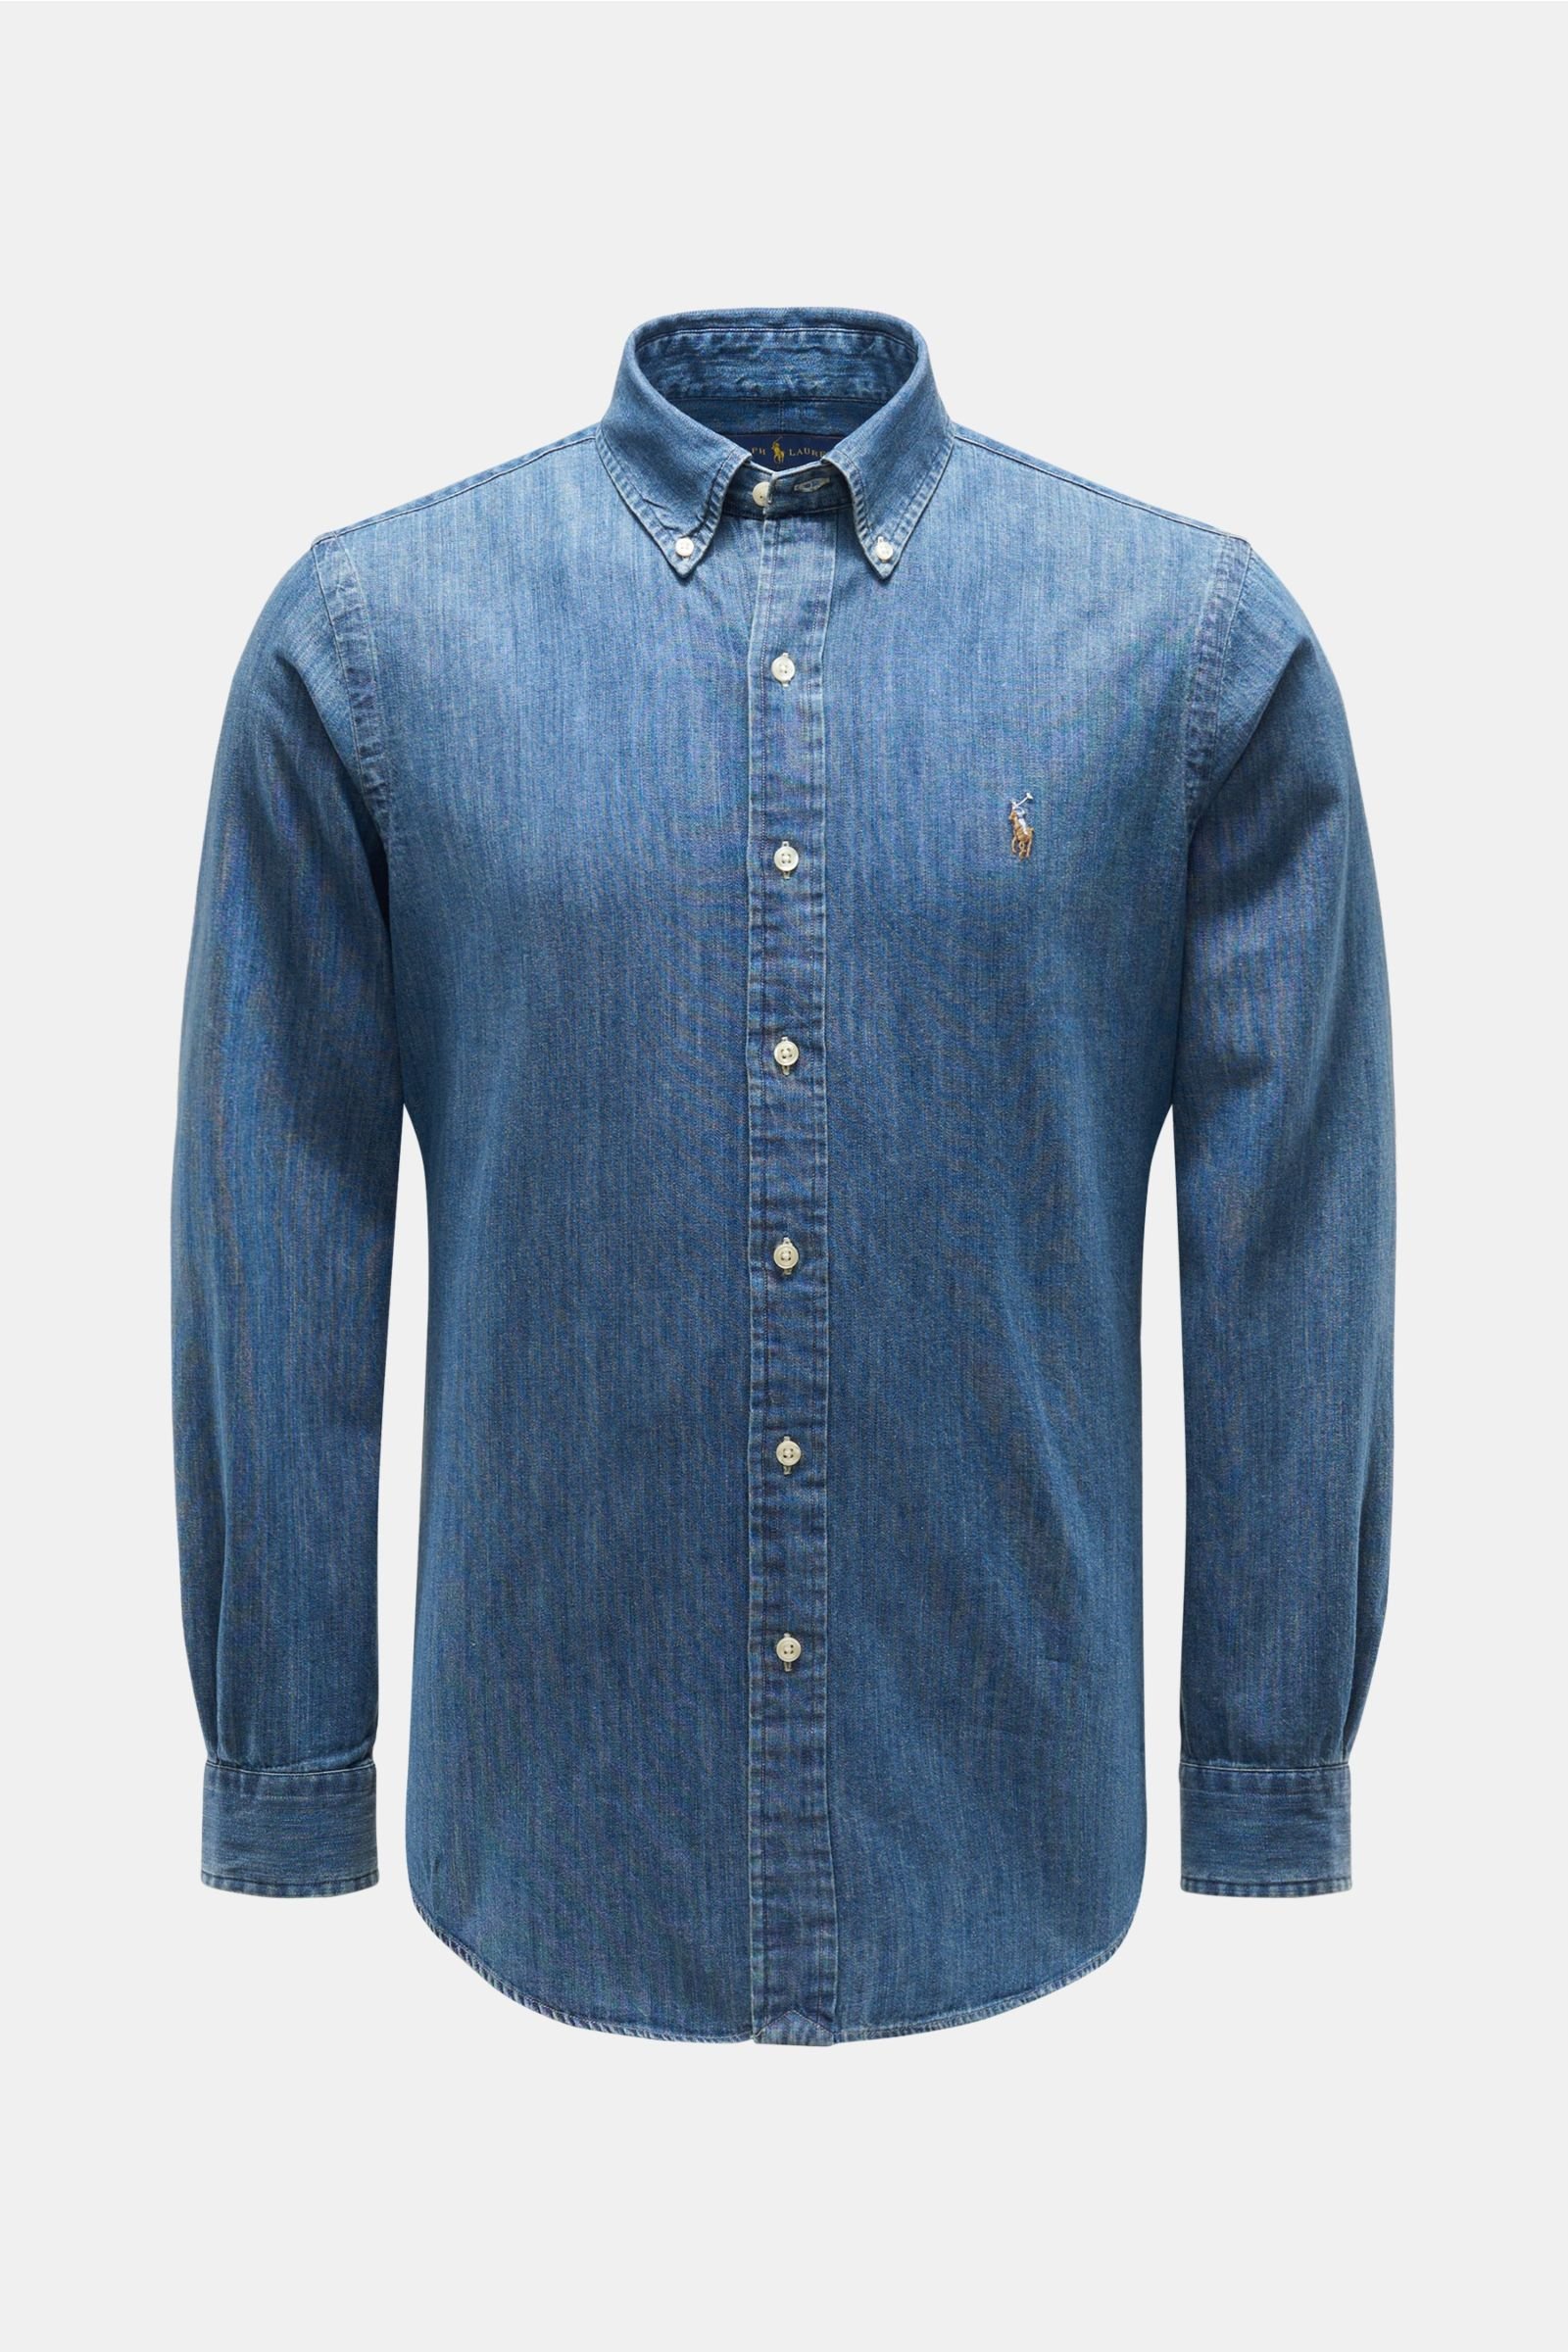 POLO RALPH LAUREN chambray shirt button-down collar grey-blue | BRAUN  Hamburg